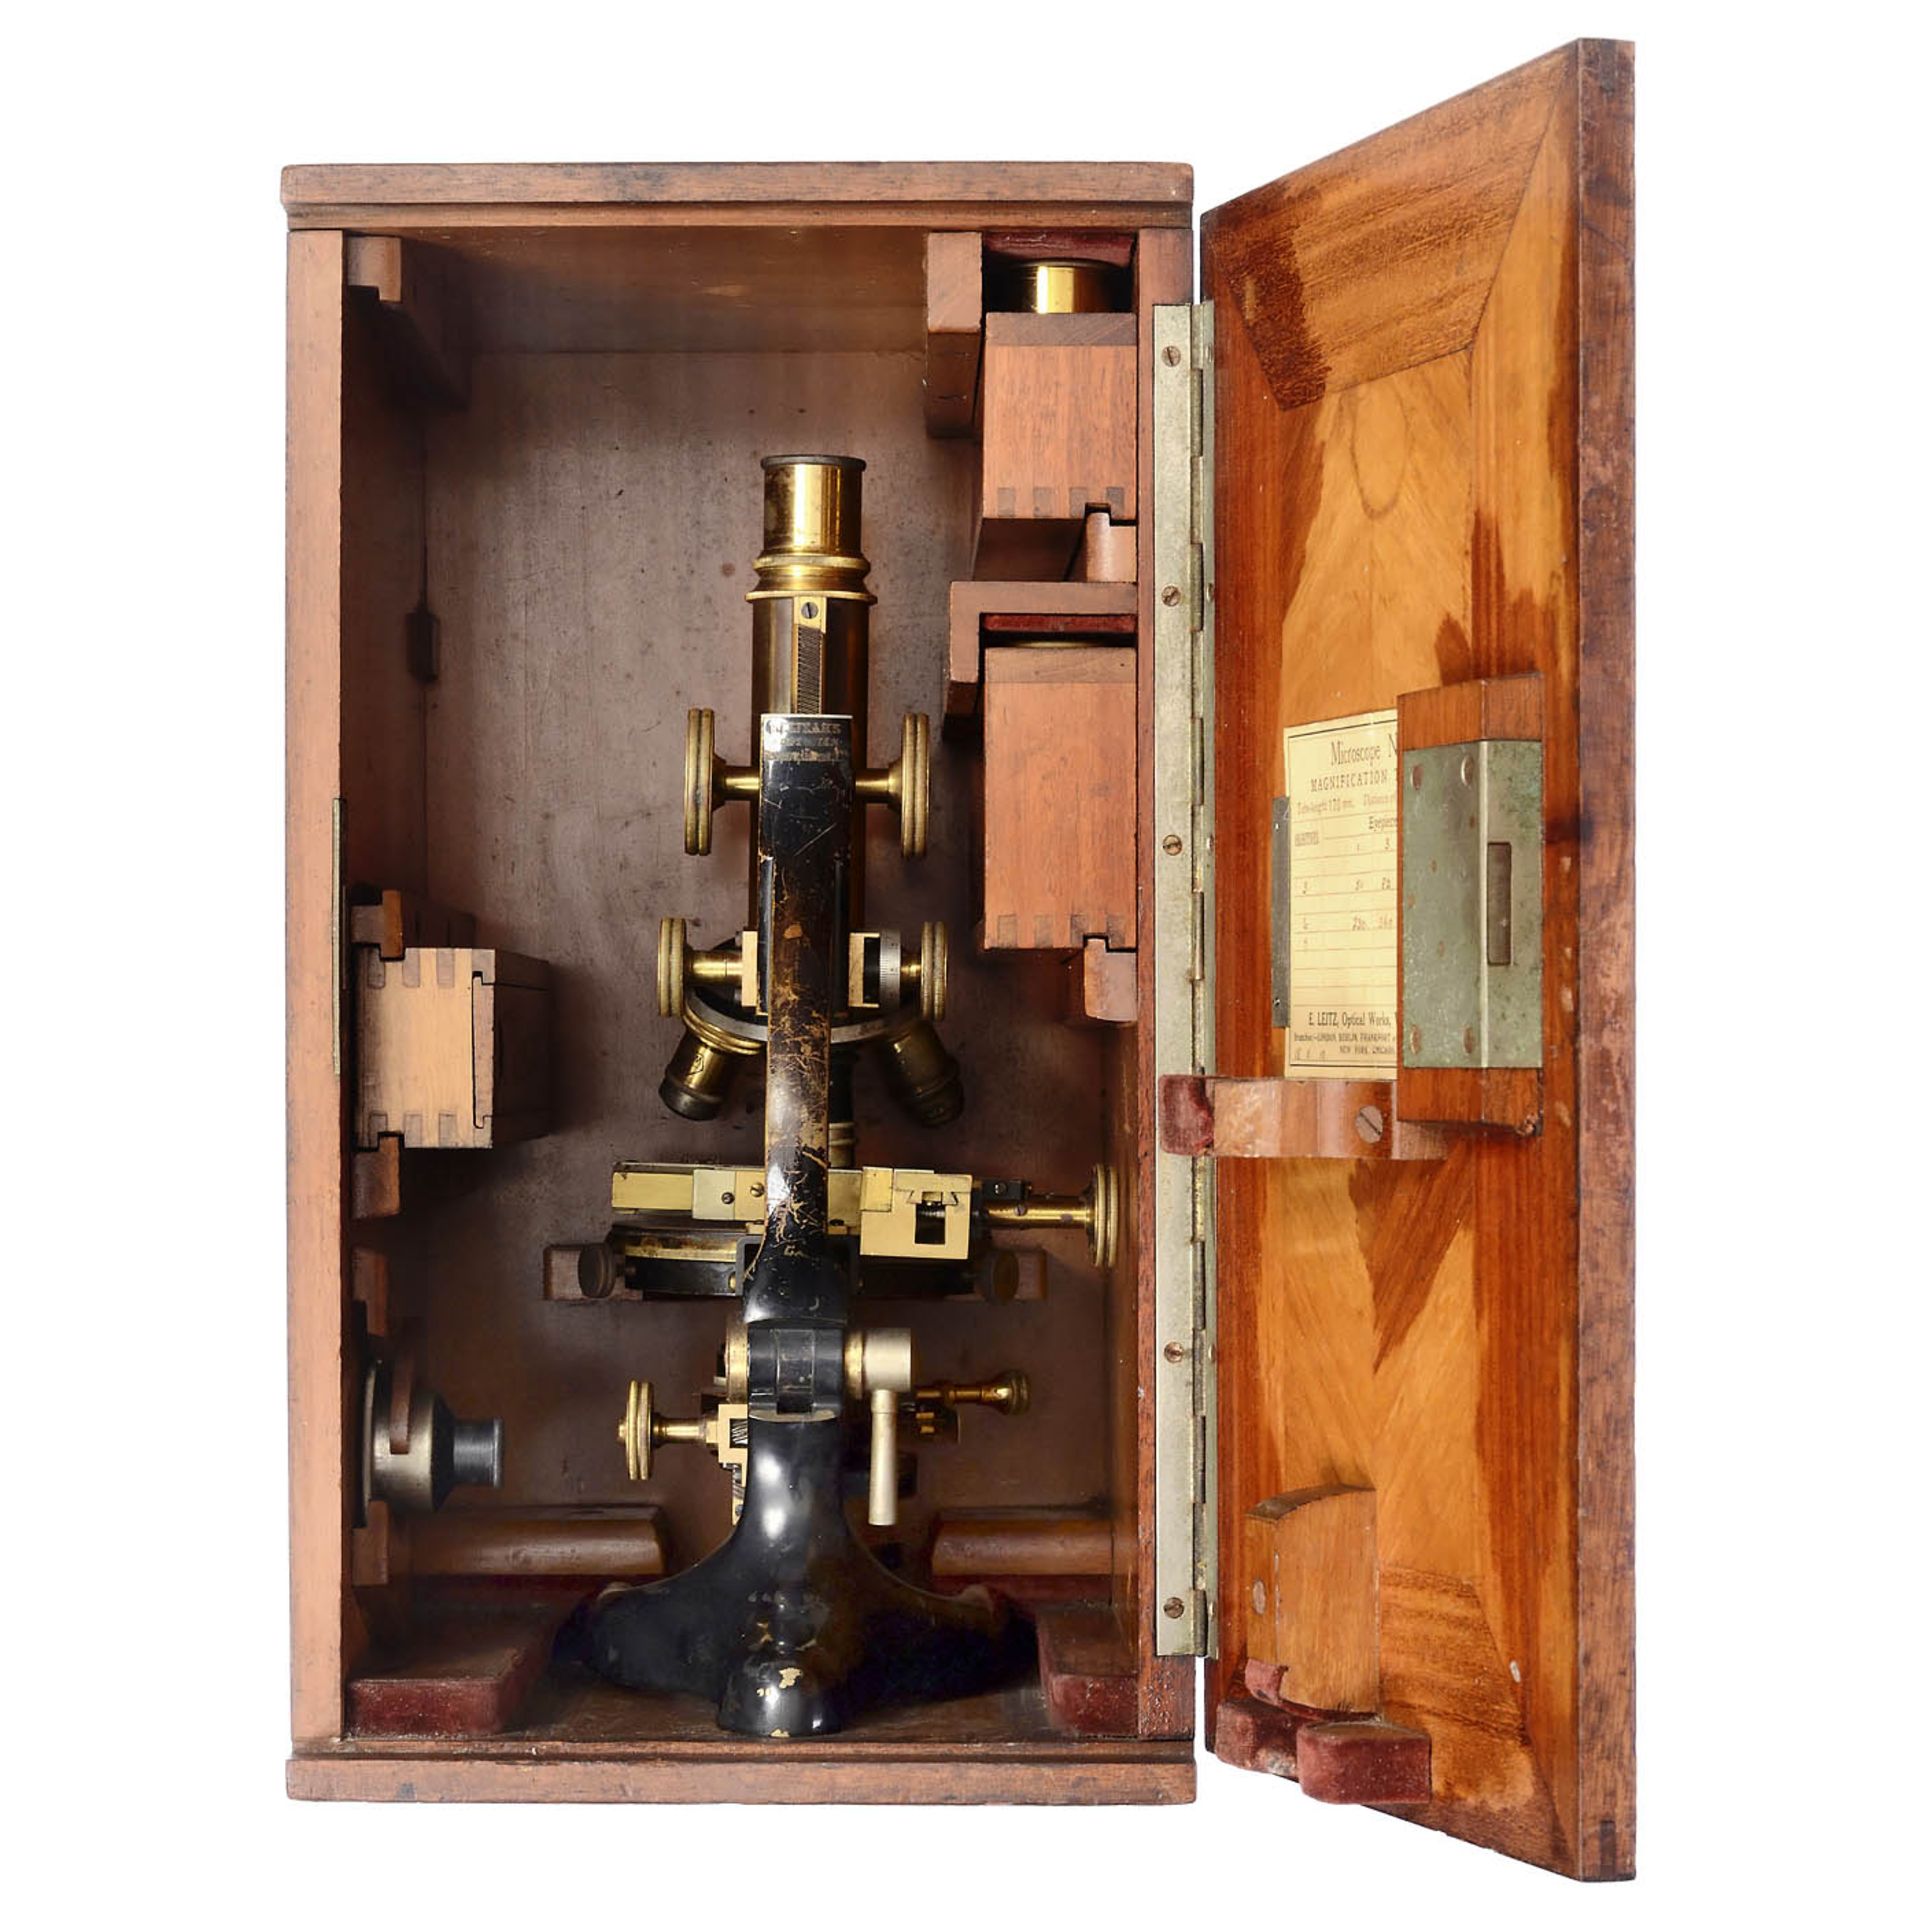 Large Laboratory Microscope by Ernst Leitz, Wetzlar, c. 1910 - Image 2 of 2